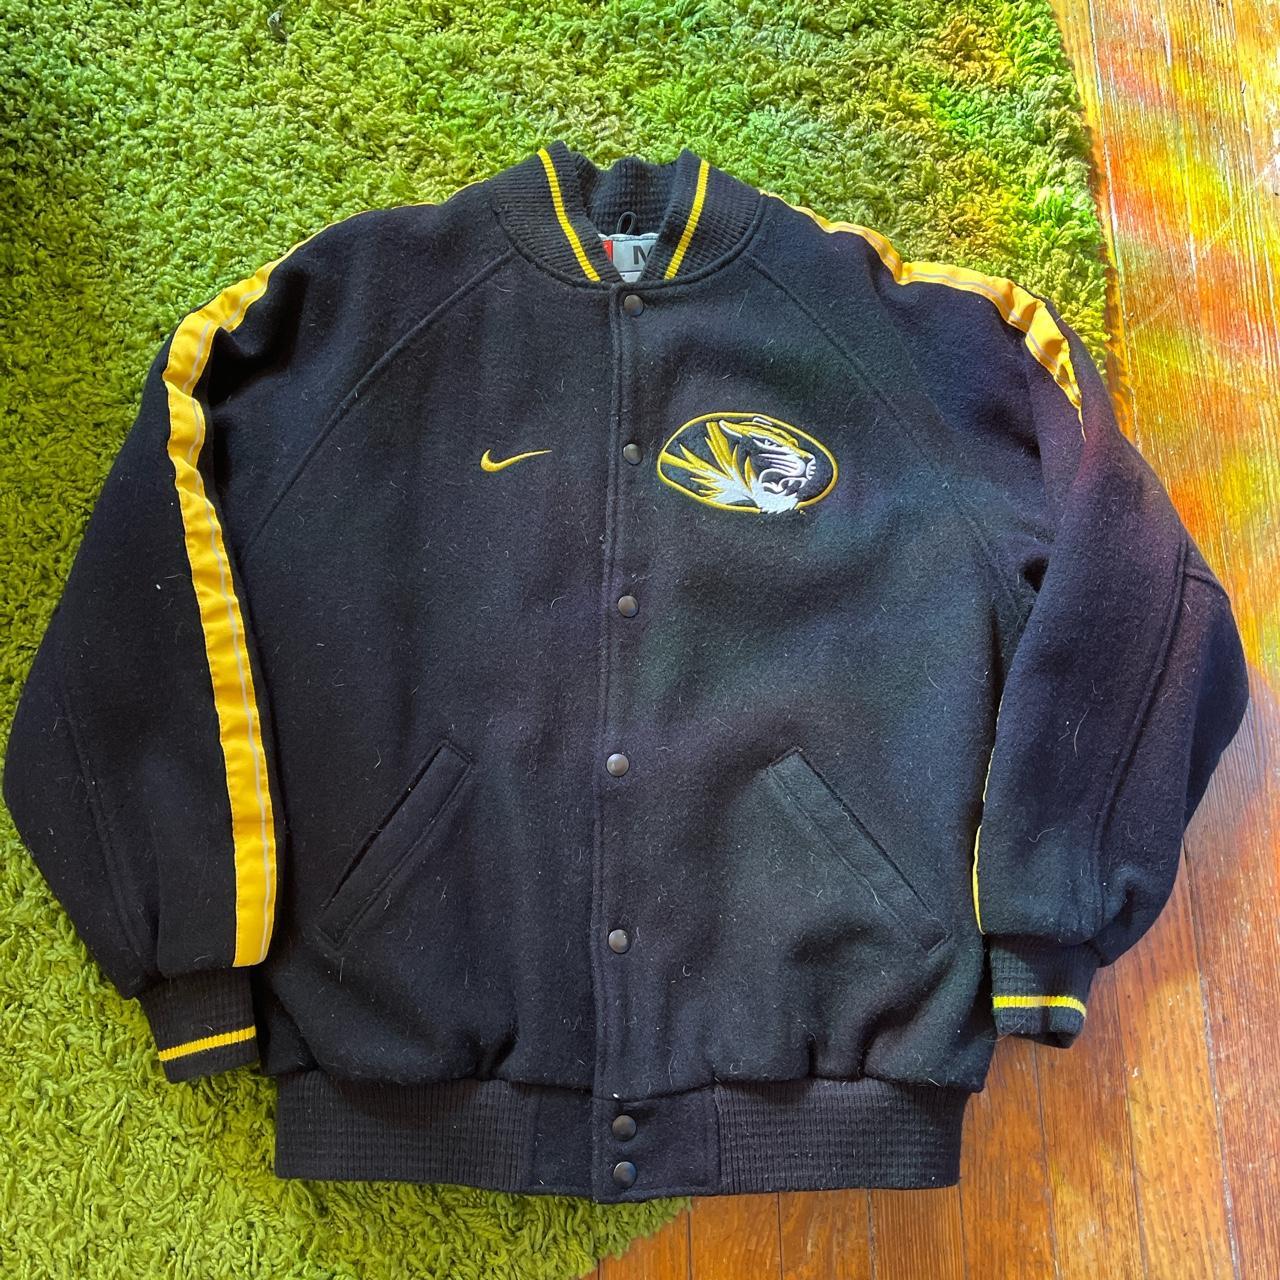 Vintage Nike varsity jacket // 90s 00s Vintage - Depop